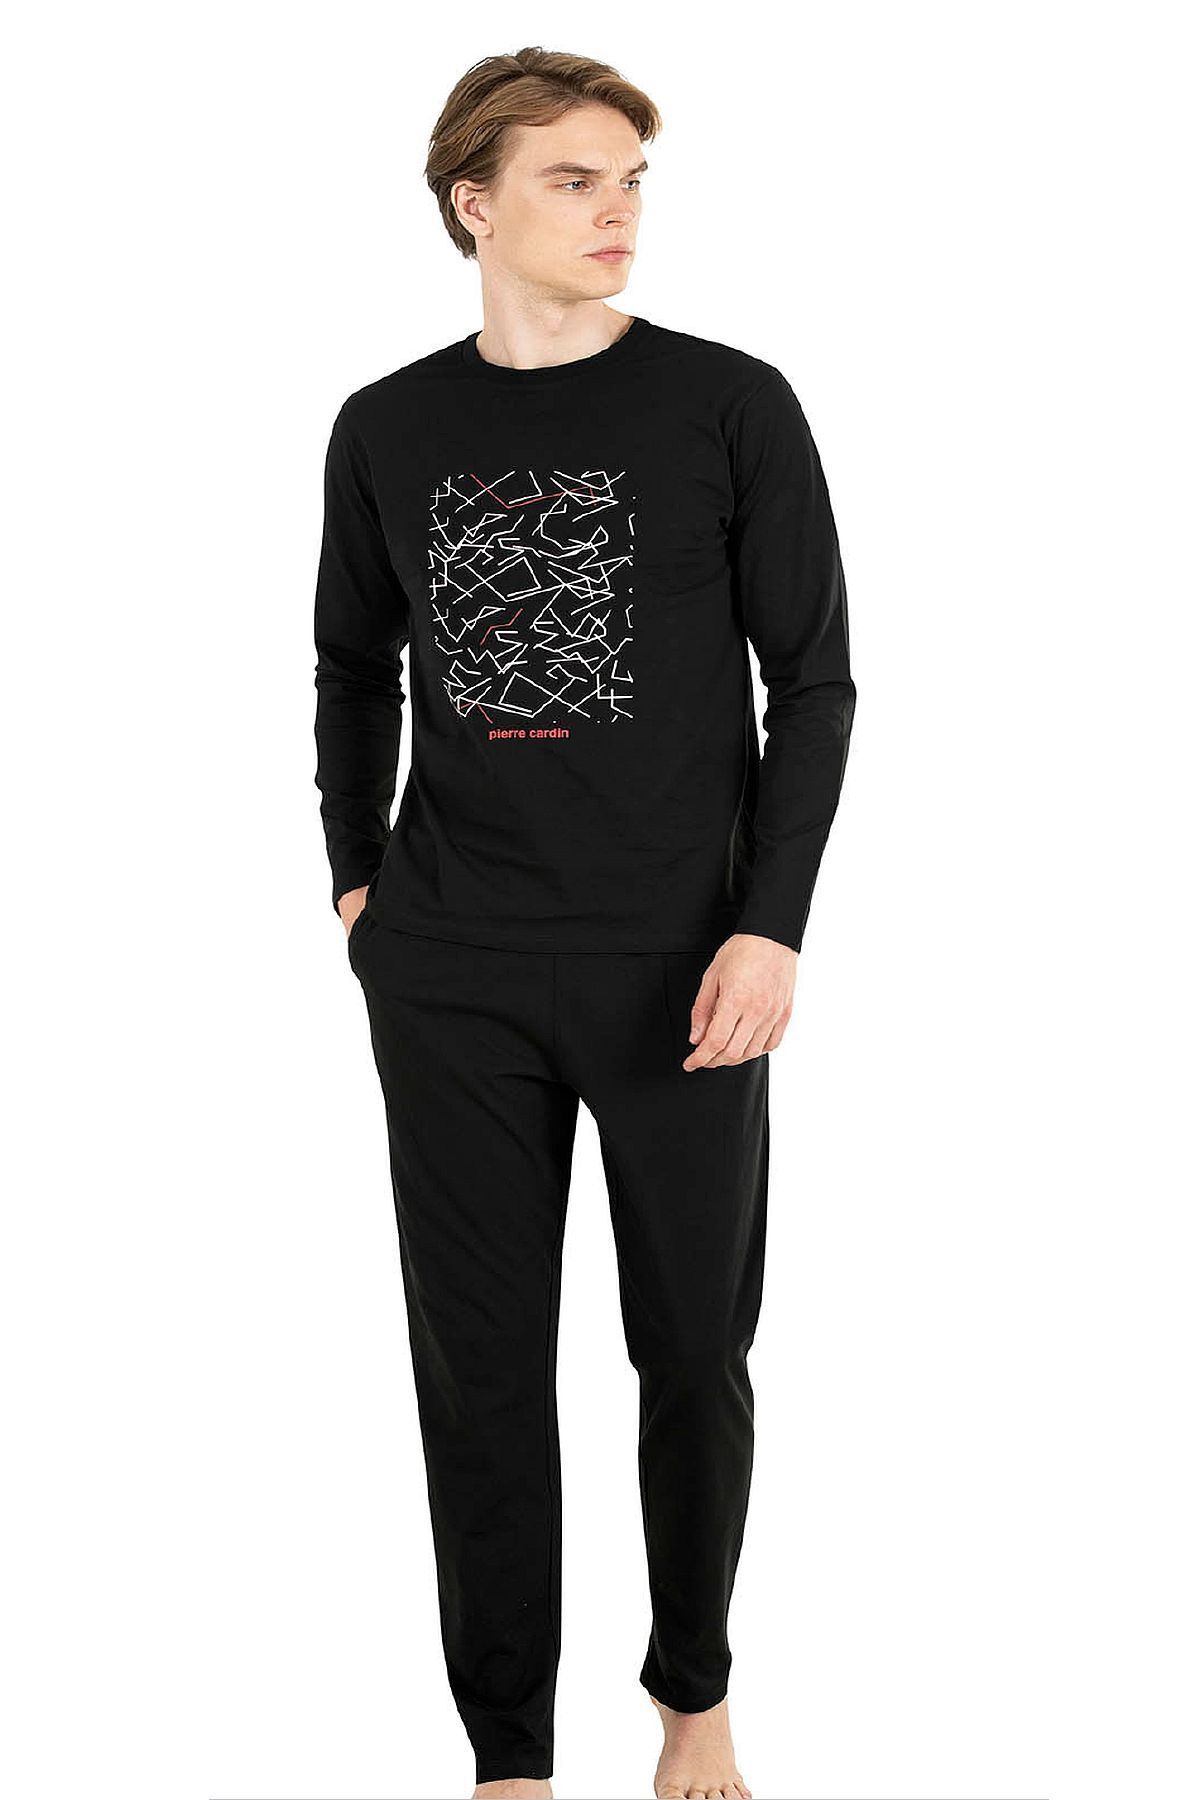 Pierre Cardin 6030 Erkek Uzun Kollu Pijama Takımı-siyah